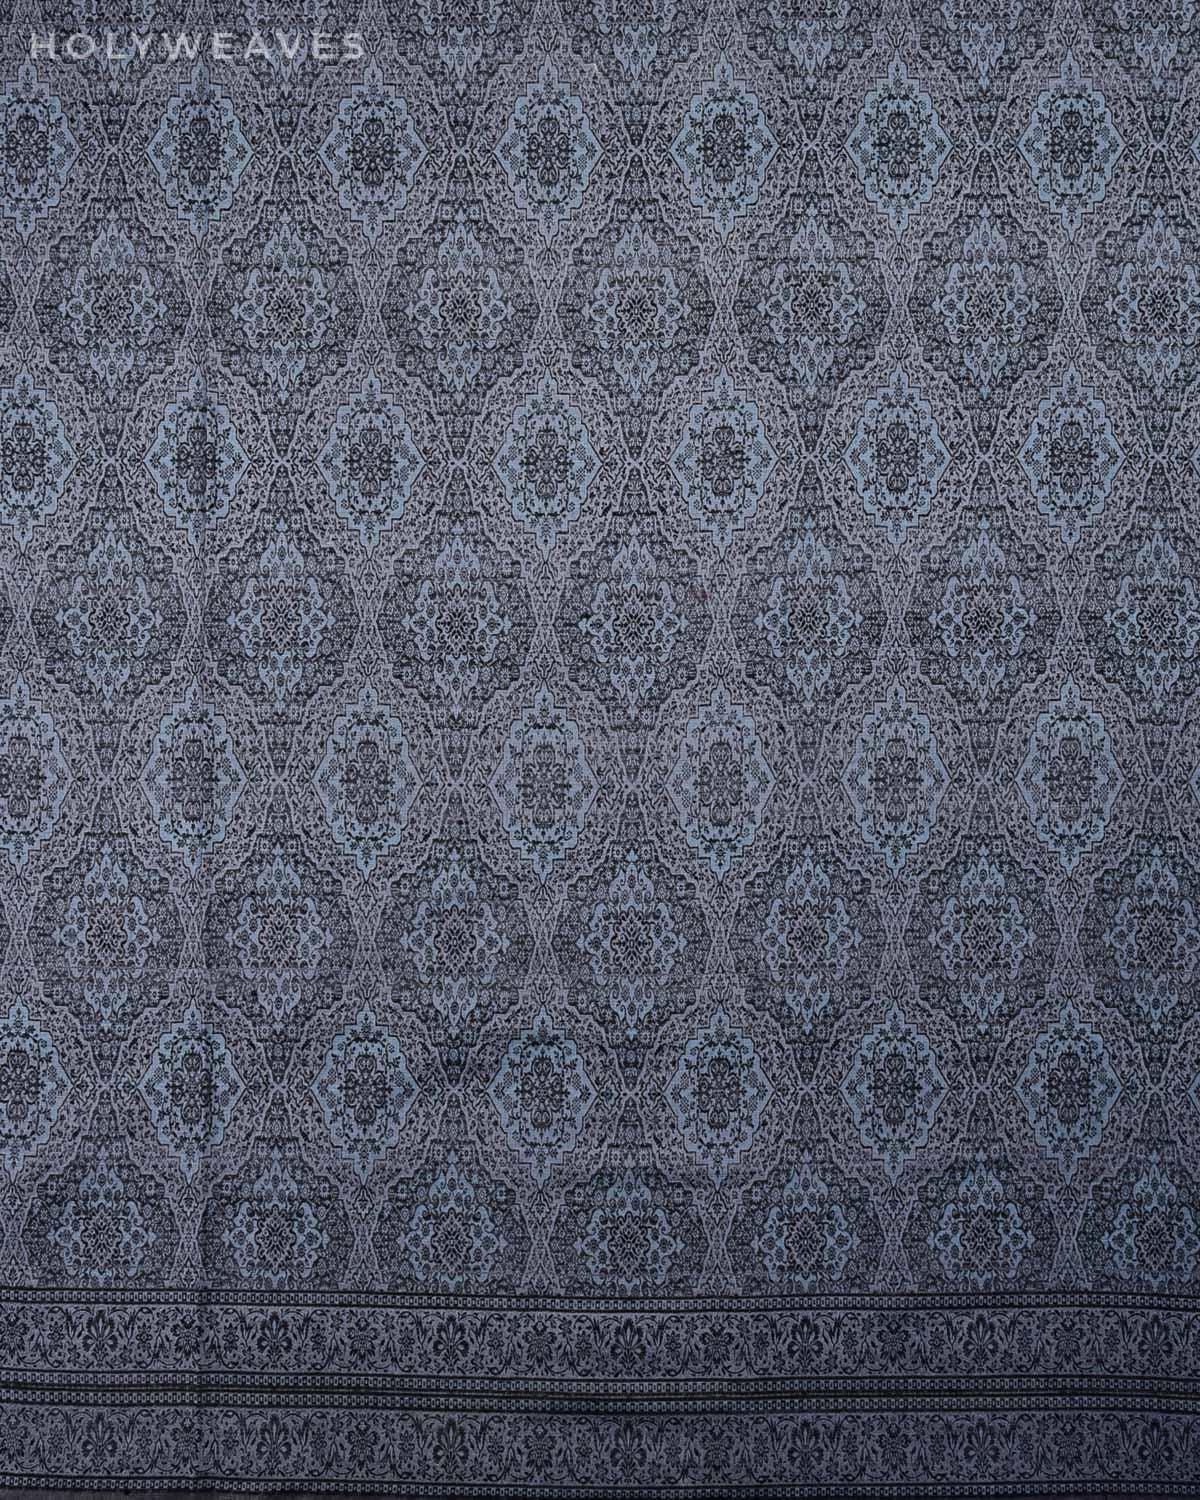 Blue On Gray Banarasi Alfi Damask Jamawar Handwoven Silk-wool Shawl - By HolyWeaves, Benares